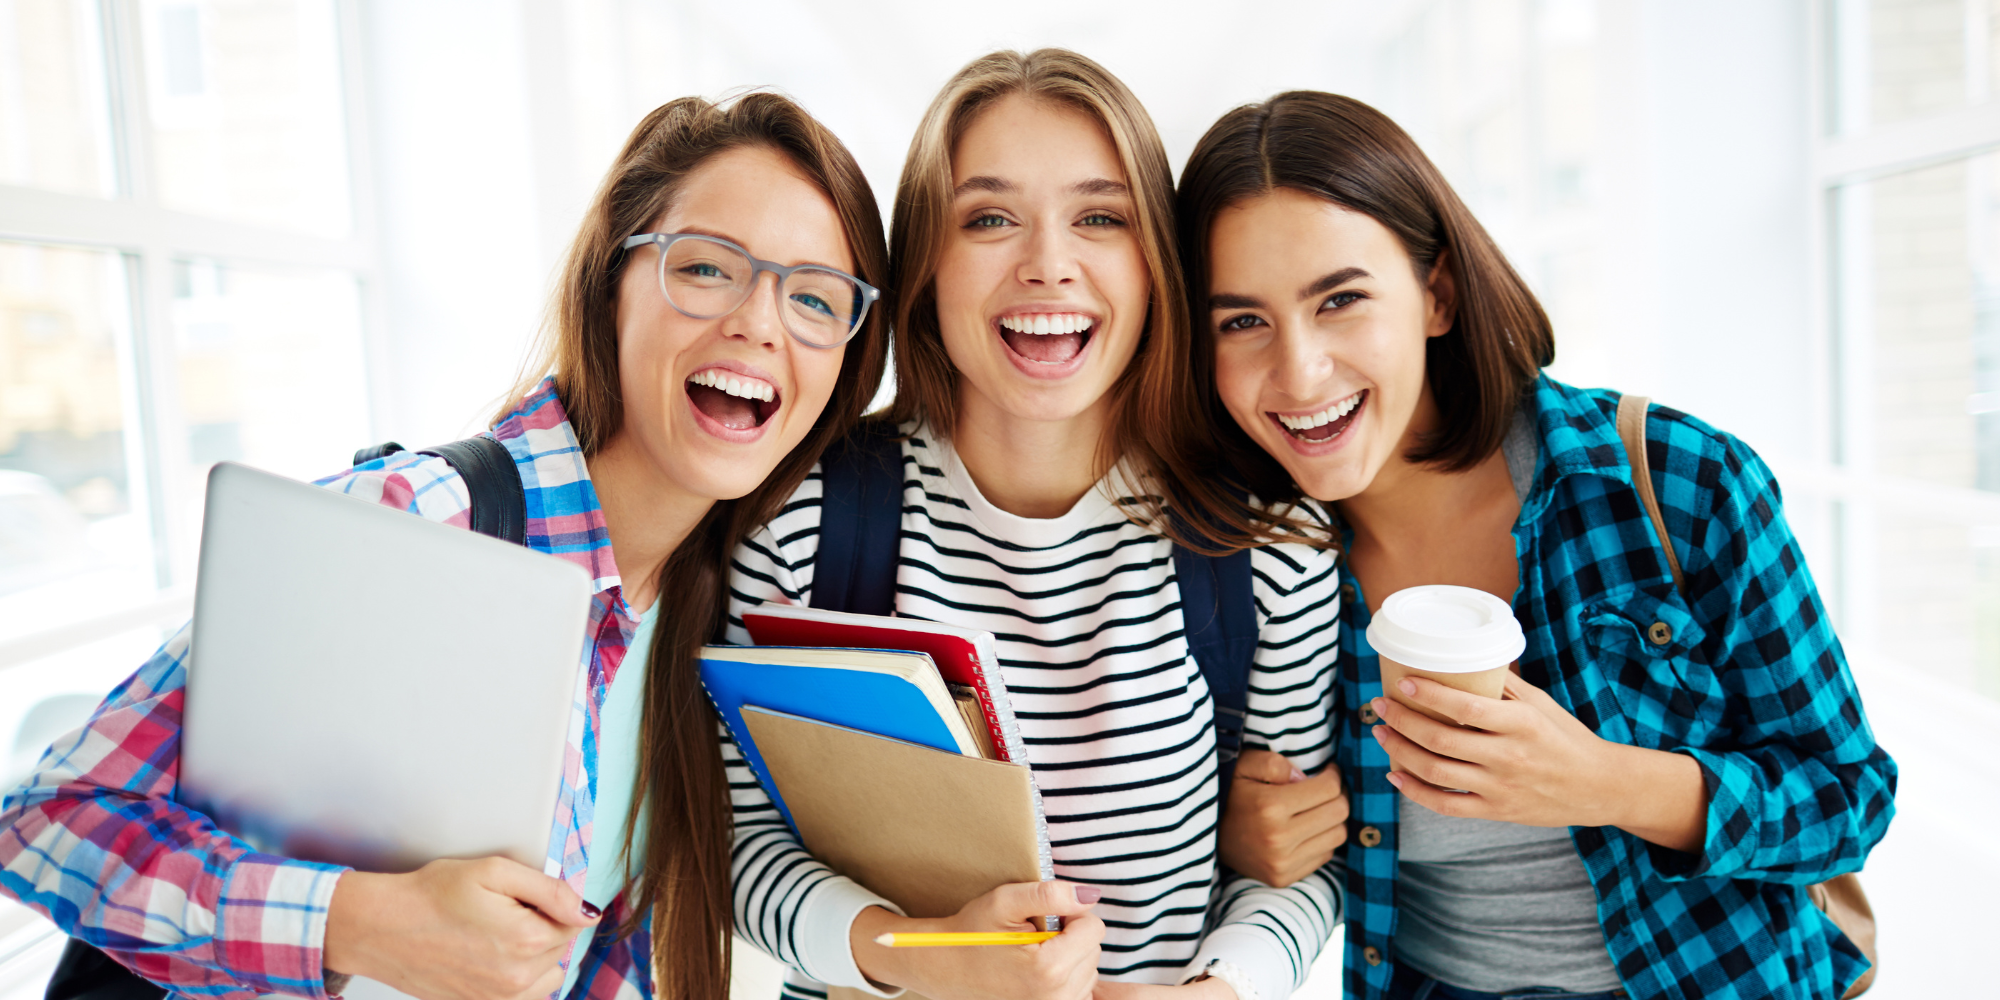 Abbildung drei Jugendliche Mädchen haben spaß und tragen Notizblöcke und Café in der Hand